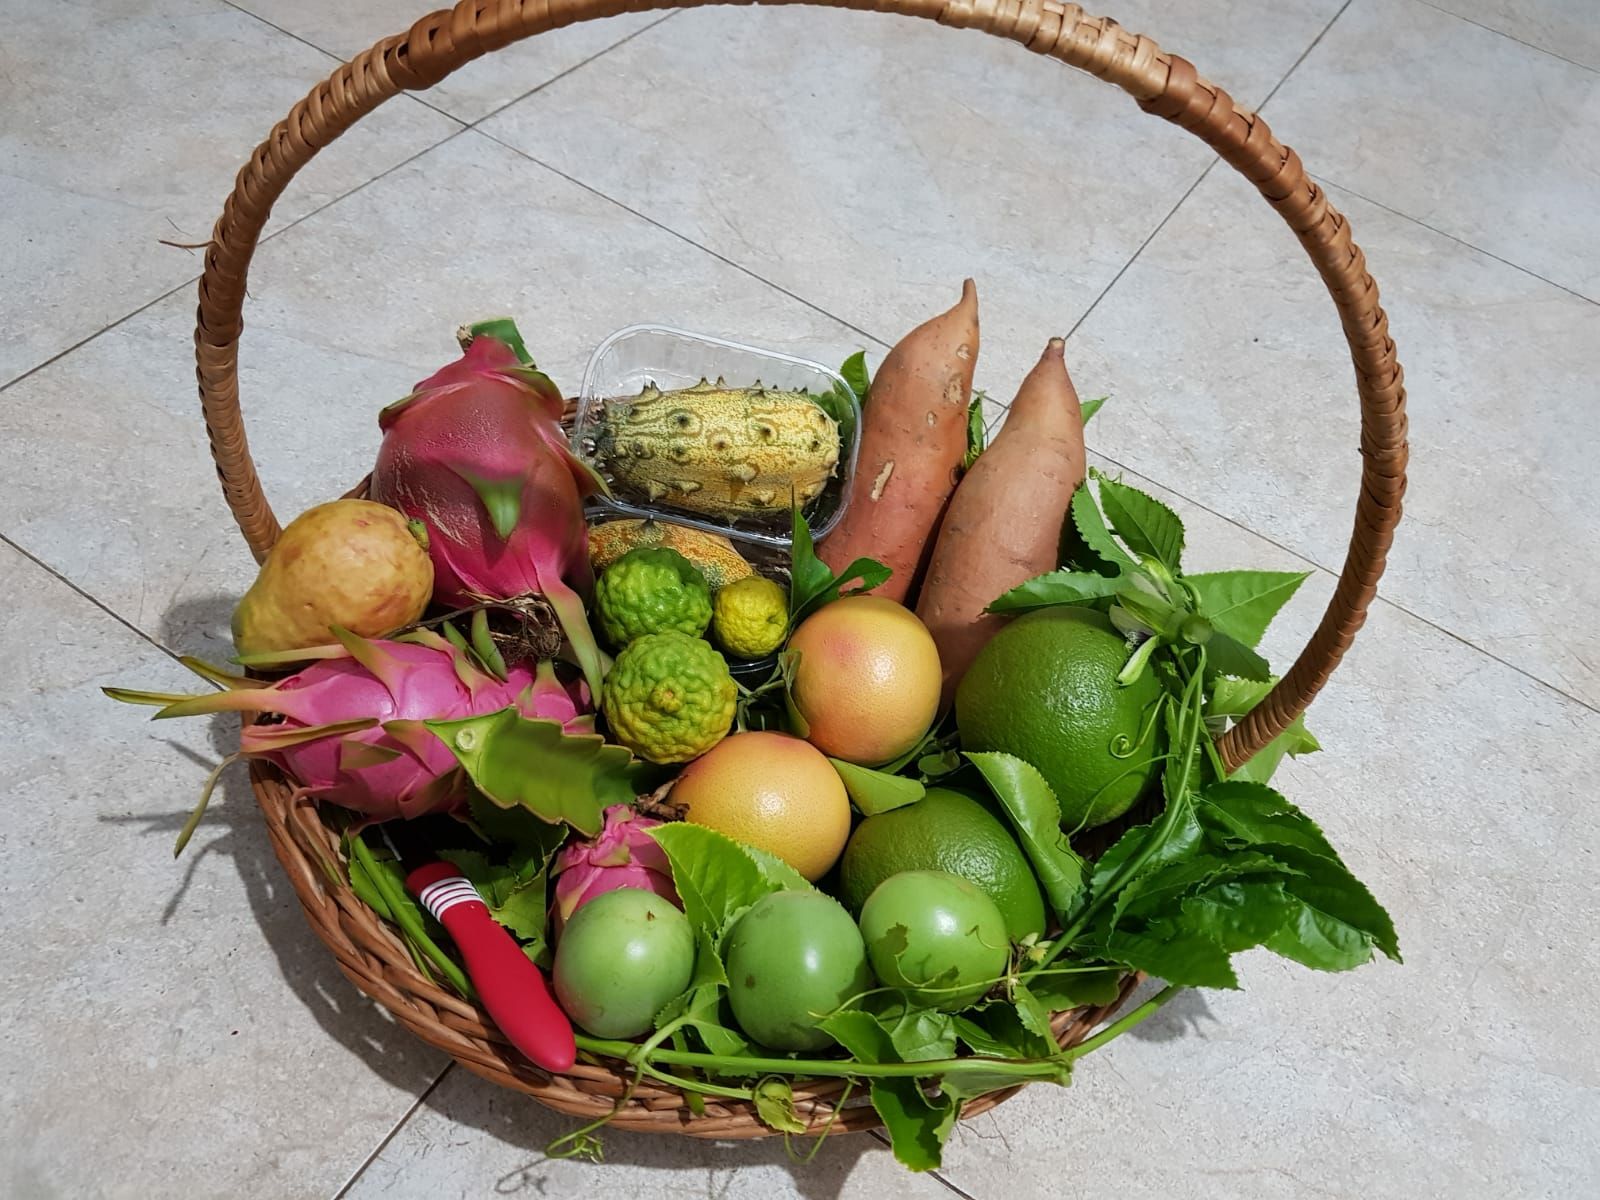 Shport frutash ekzotike kultivuar nga Irakli Shkoza (Foto Linkedin)